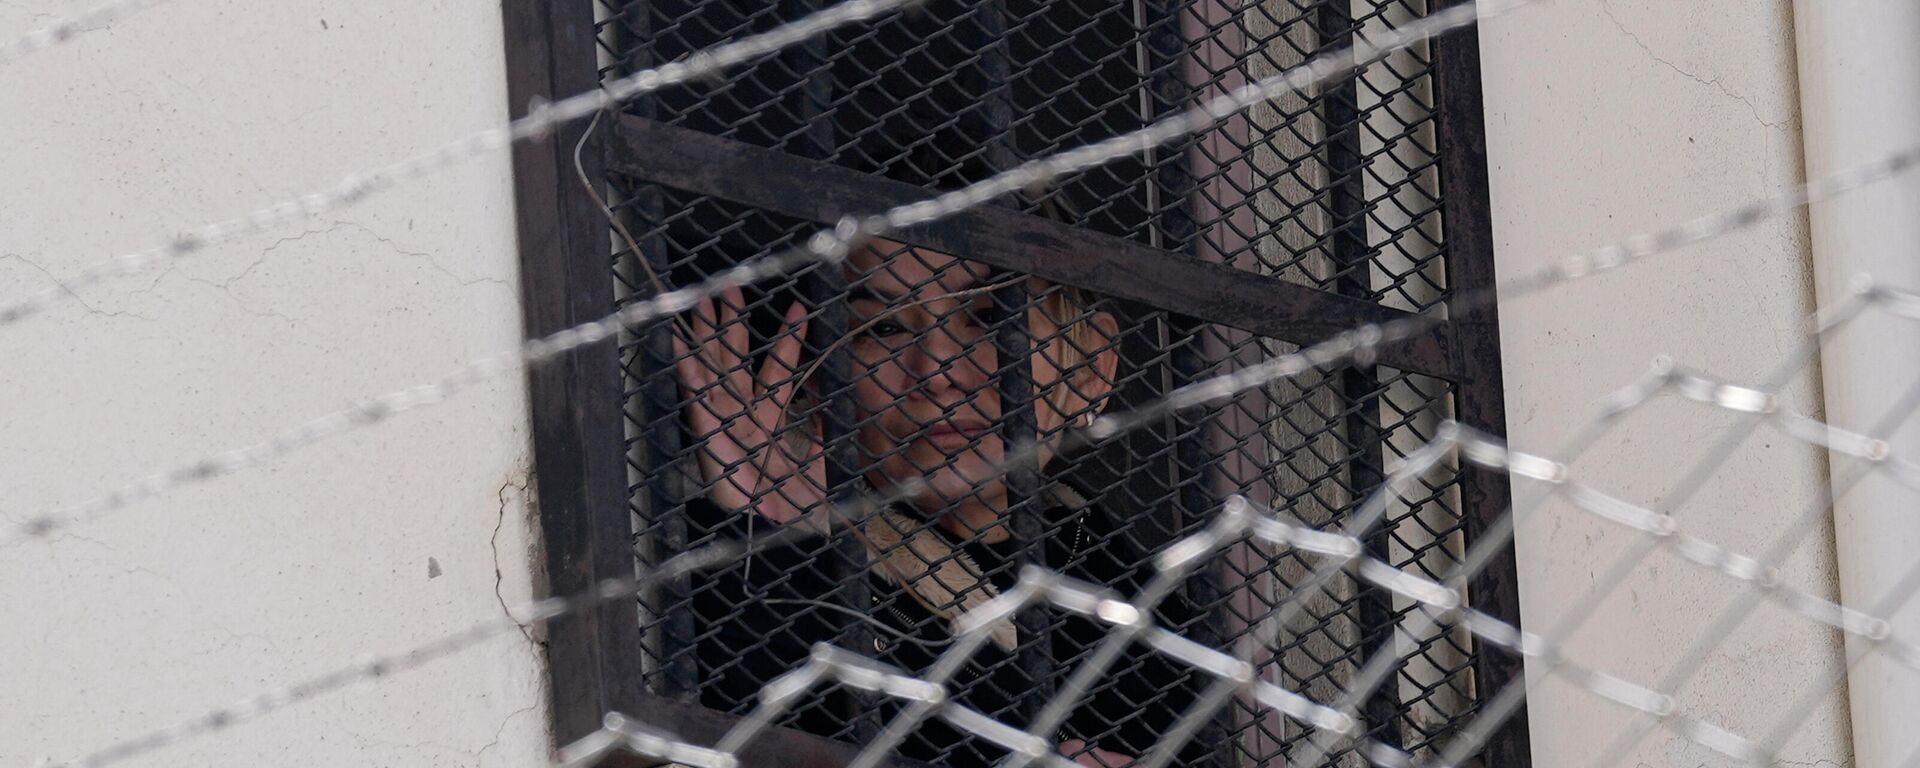 La expresidenta transitoria boliviana, Jeanine Áñez (2019-2020), en la cárcel - Sputnik Mundo, 1920, 14.03.2022